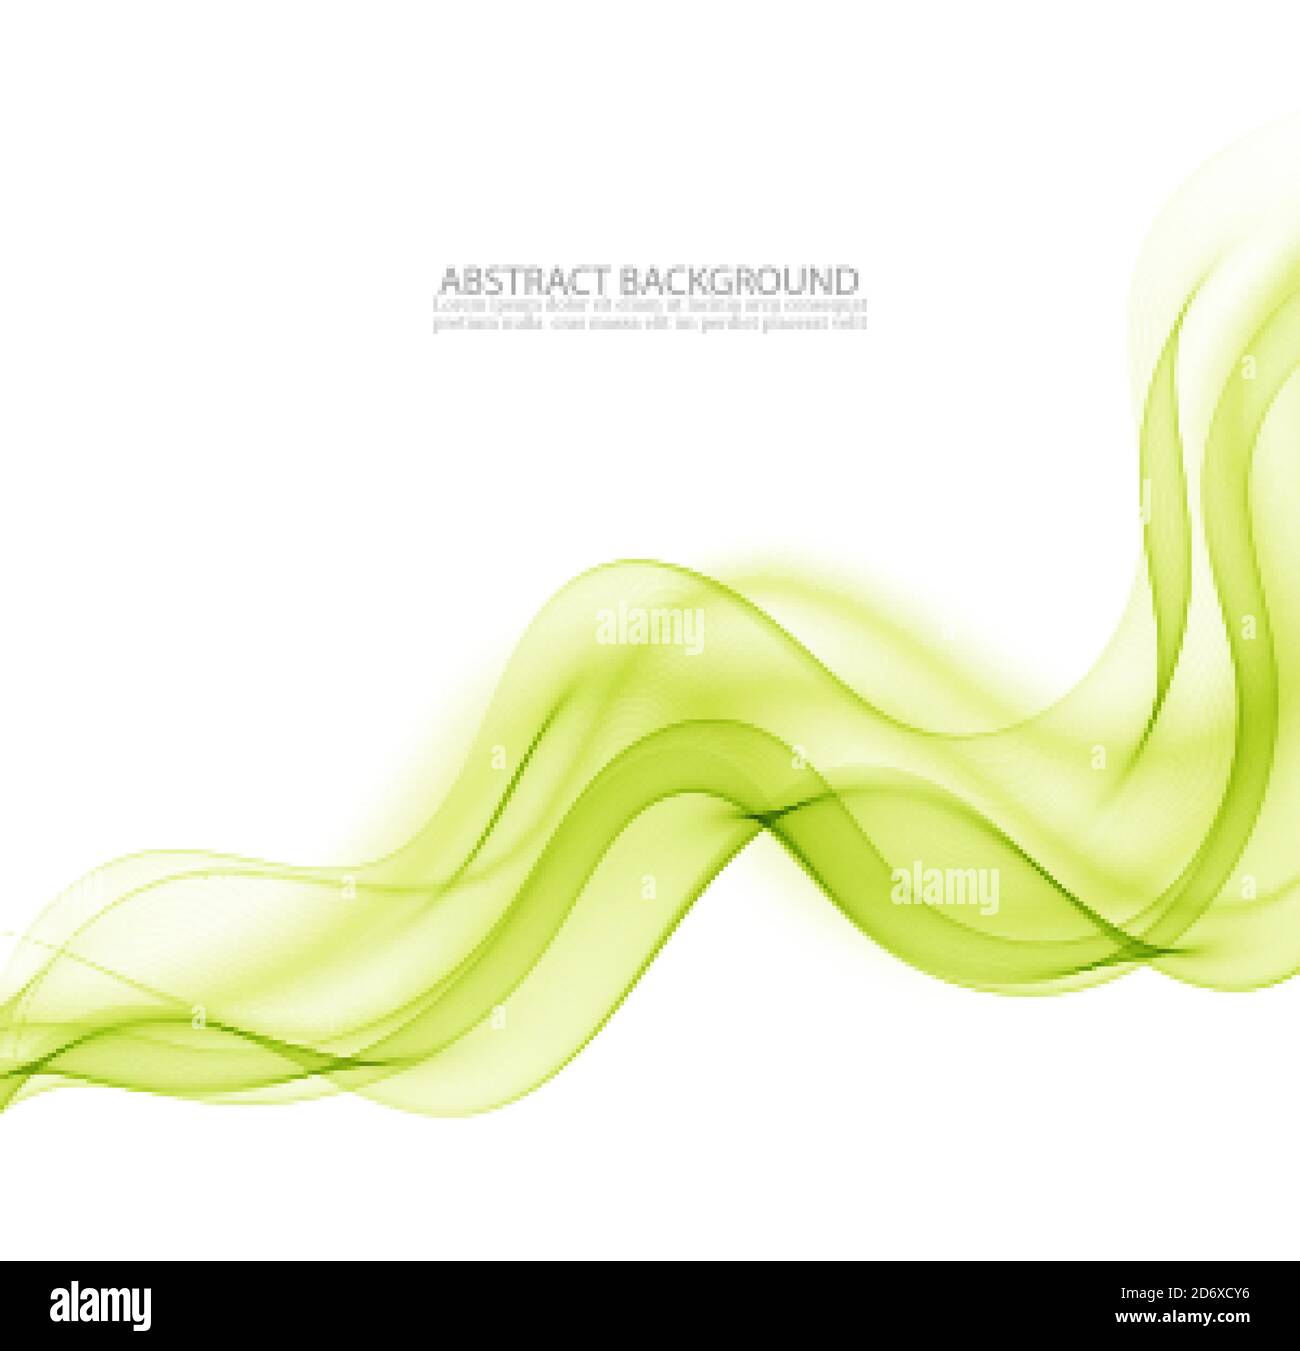 Abstrakter Hintergrund, grün gewellte Linien für Broschüre, Website, Flyer Design. Stock Vektor